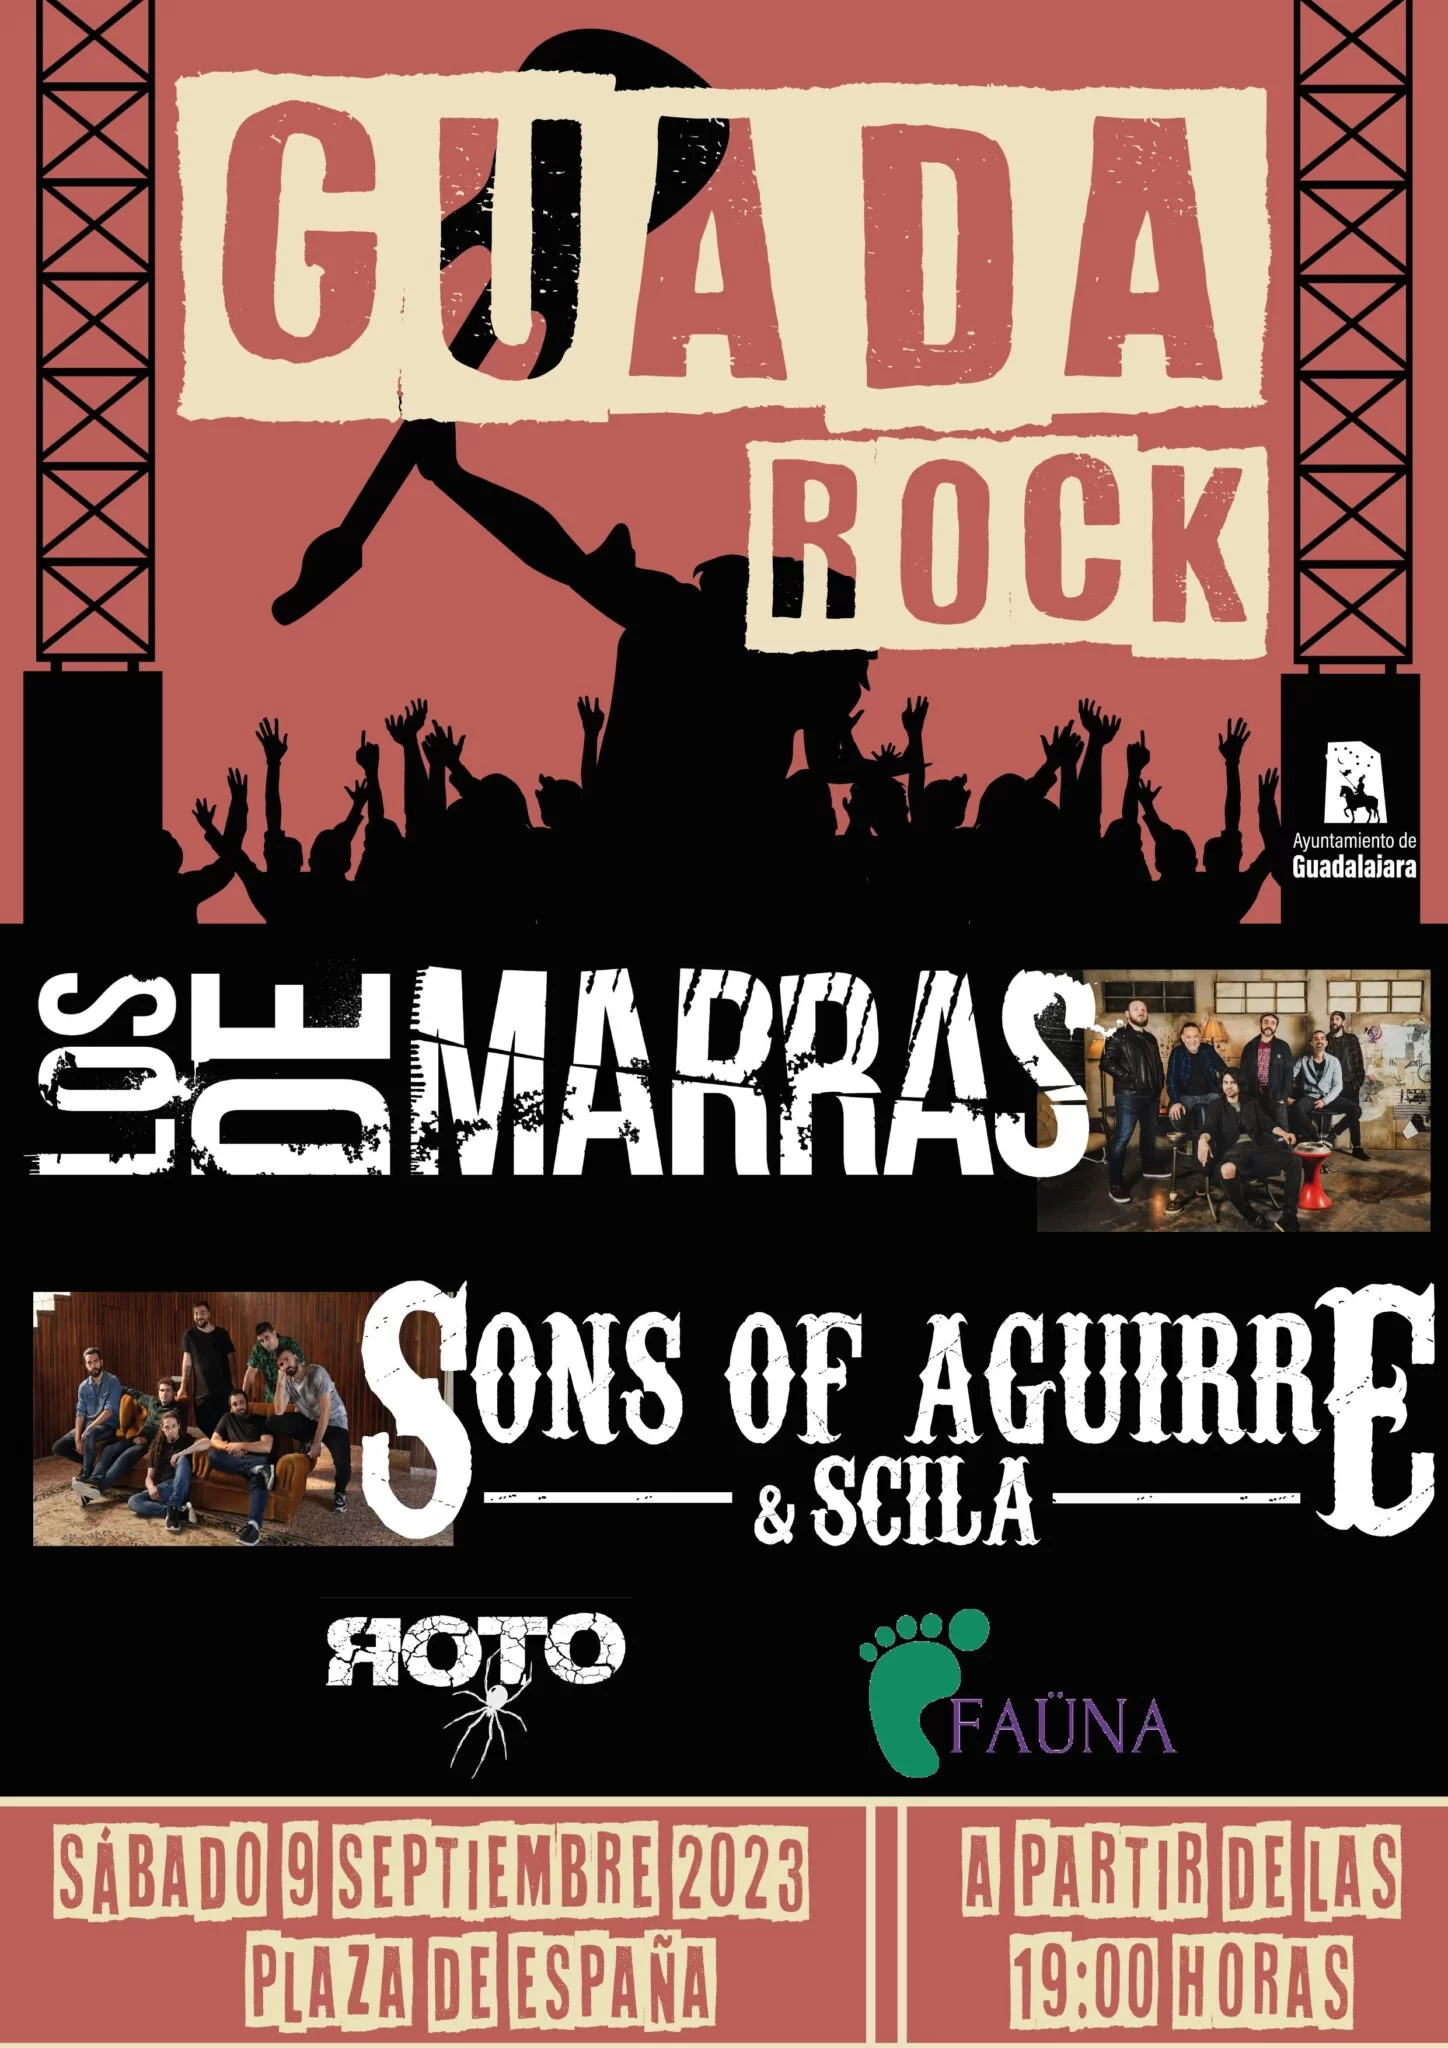 “GUADA ROCK” tomará el escenario en la Plaza de España, con grupos locales como Roto y Faüna, junto con las bandas principales Sons of Aguirre & Scila y Los de Marras.